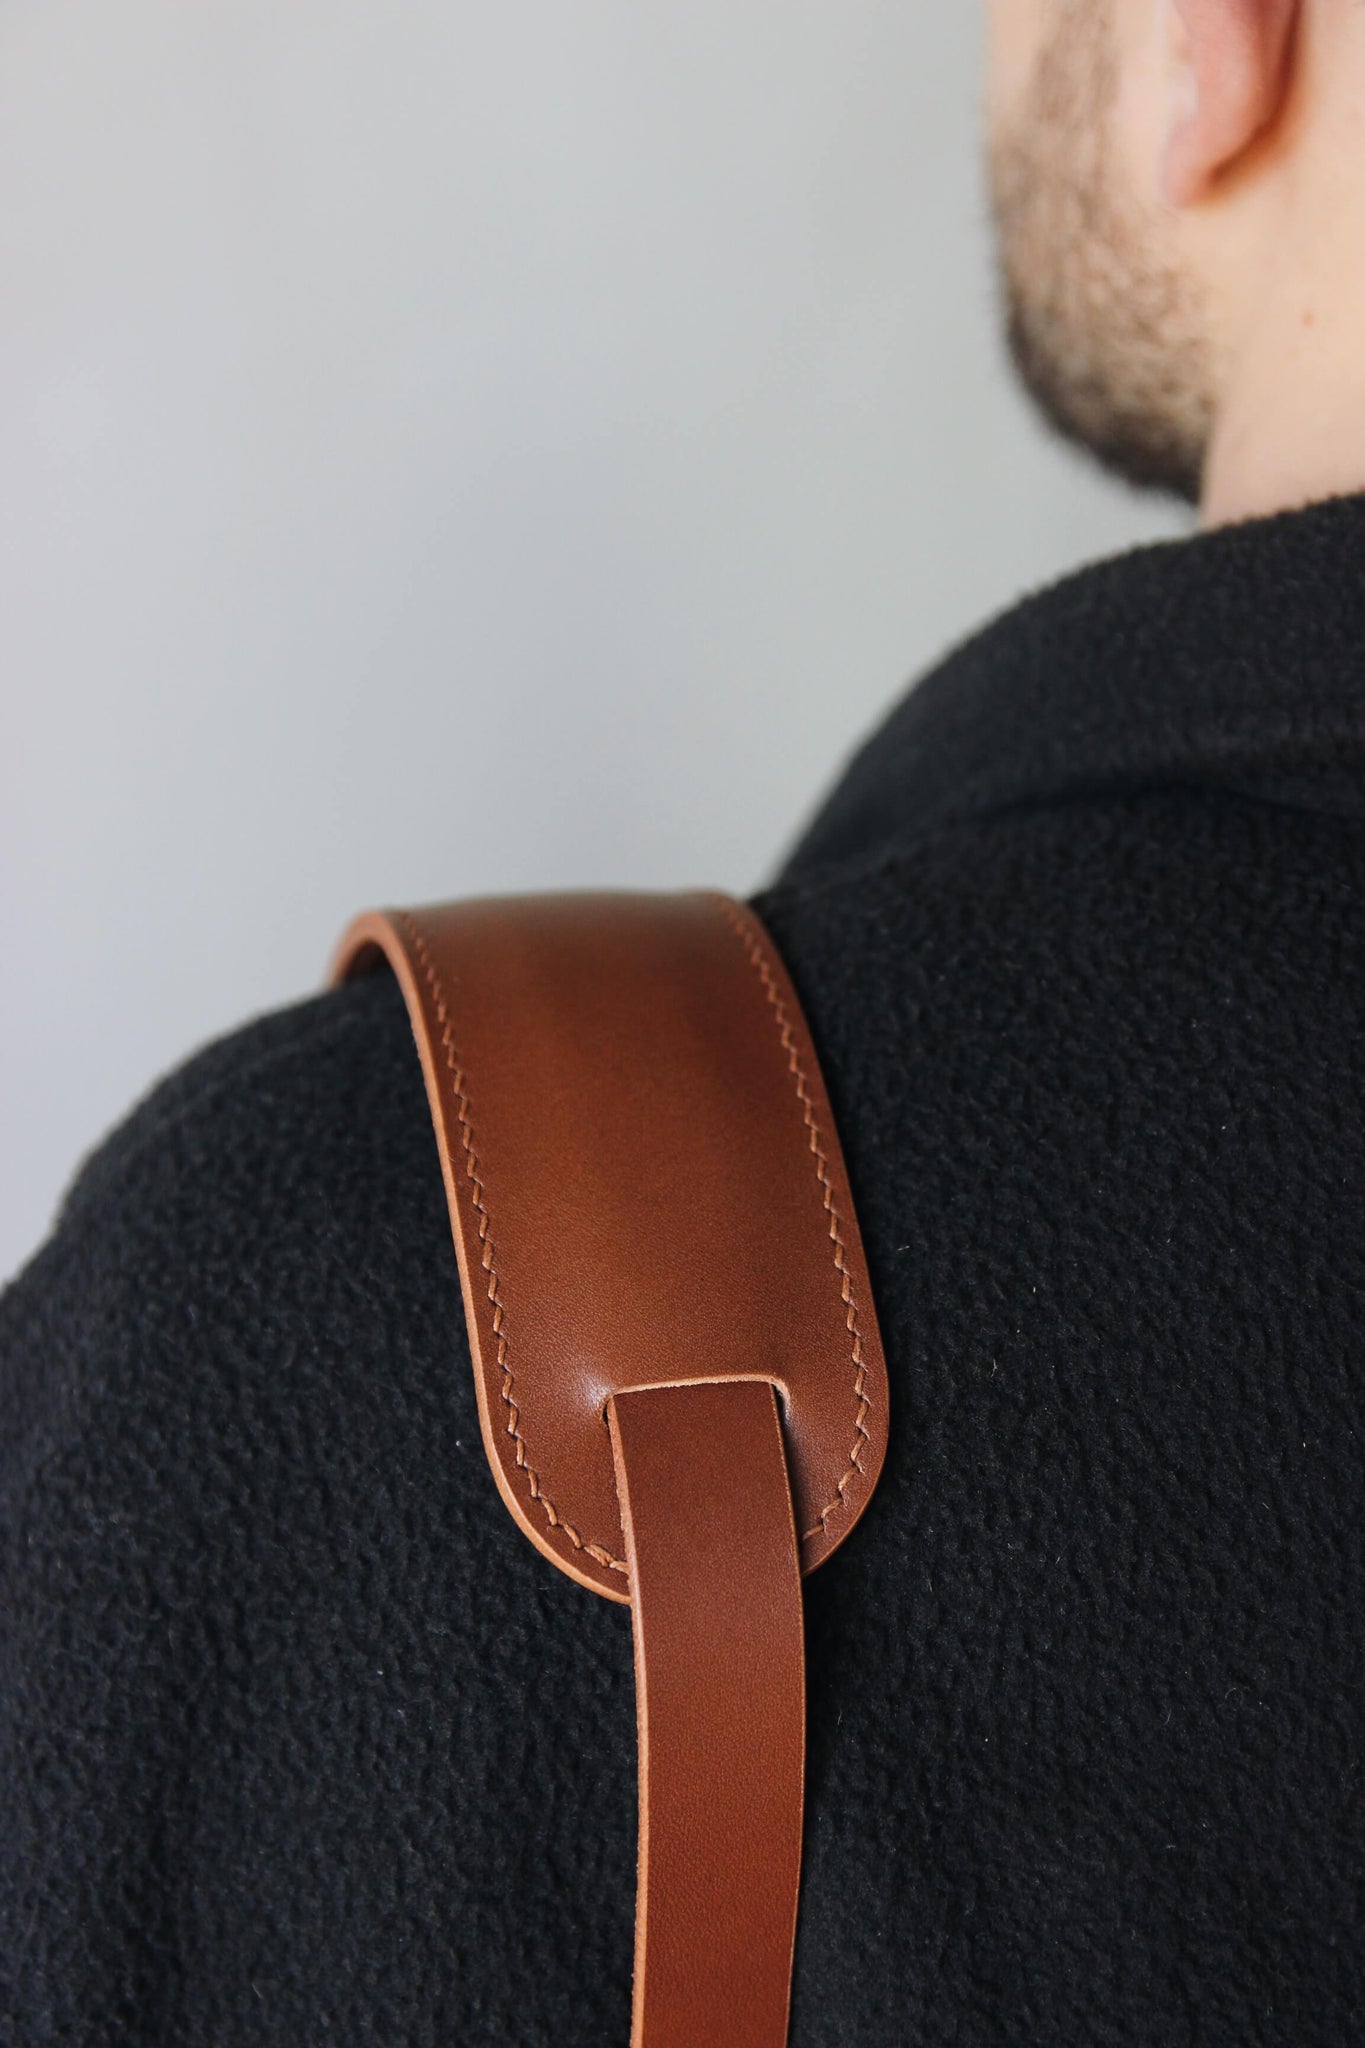 Schulterpad von einem Leder Kameragurt in Braun in Nahaufnahme und über der Schulter getragen.